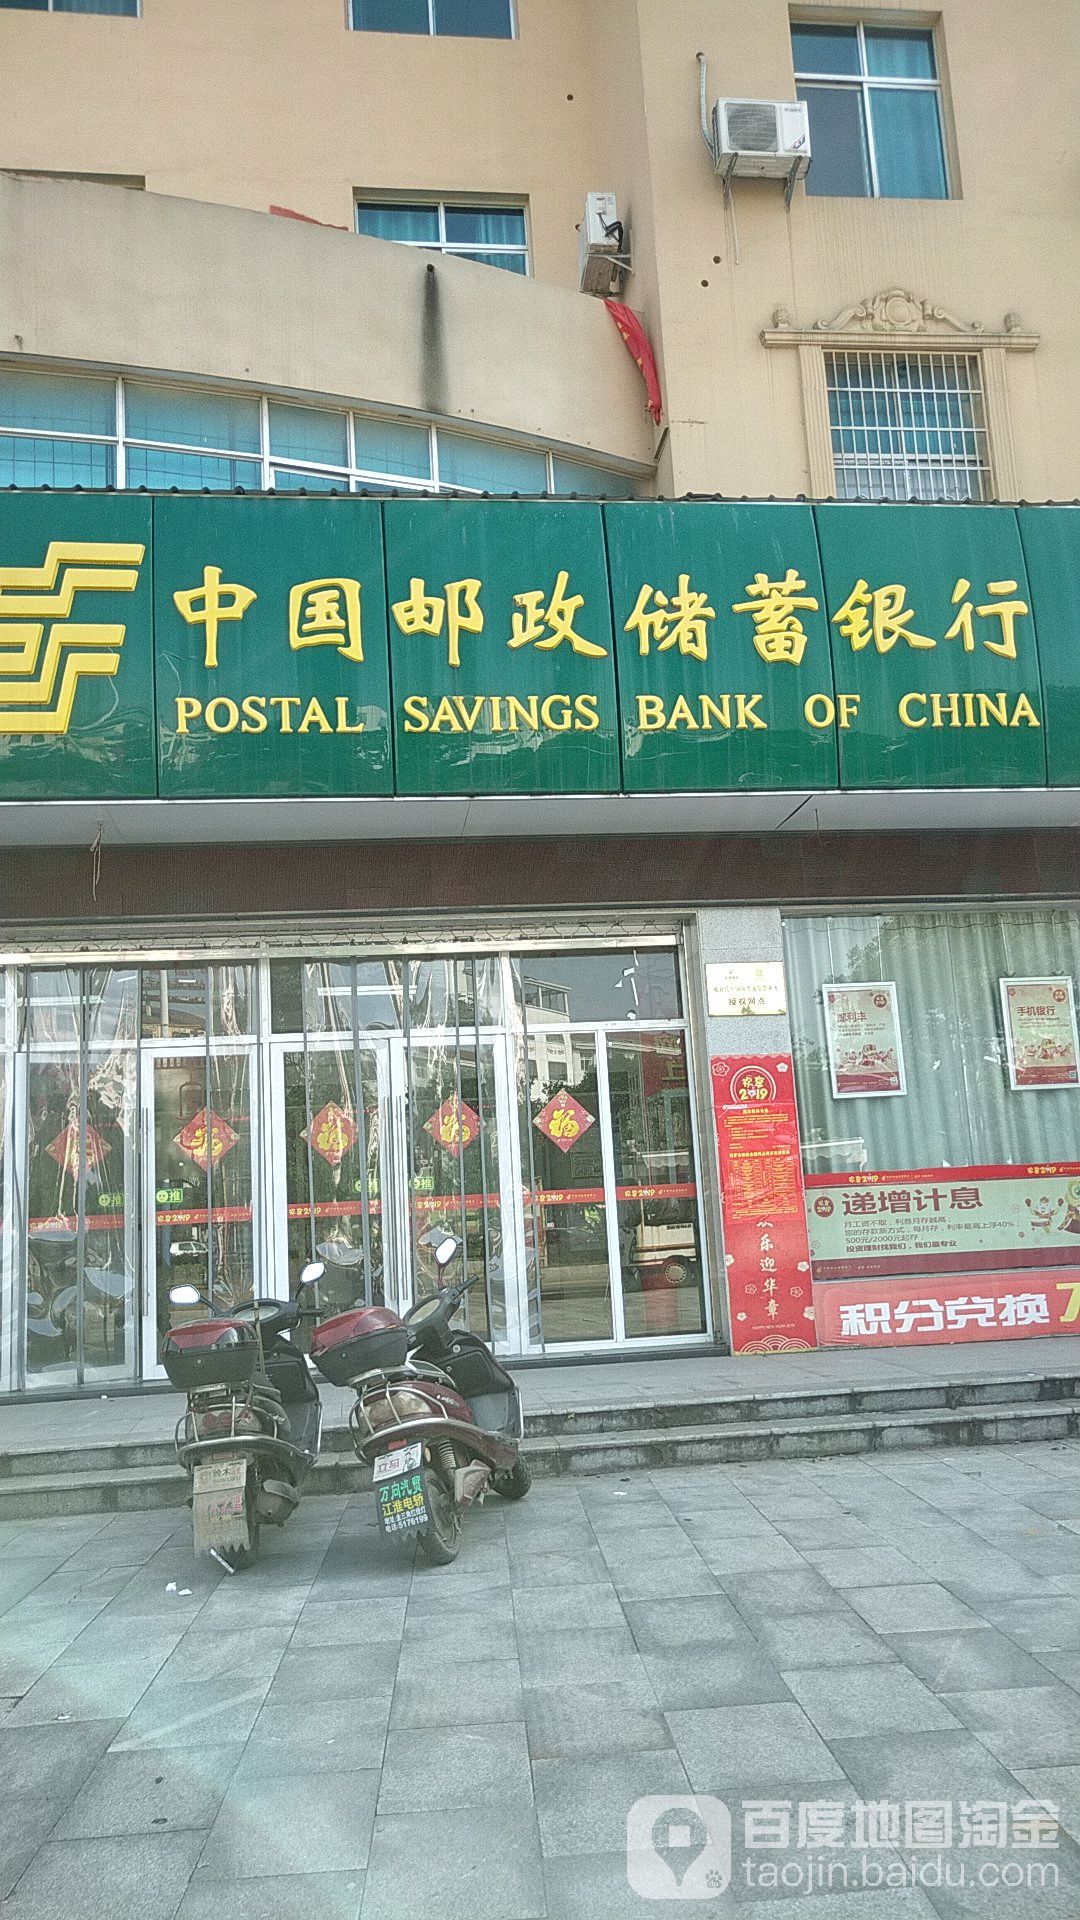 中國郵政儲蓄銀行(城西營業所)